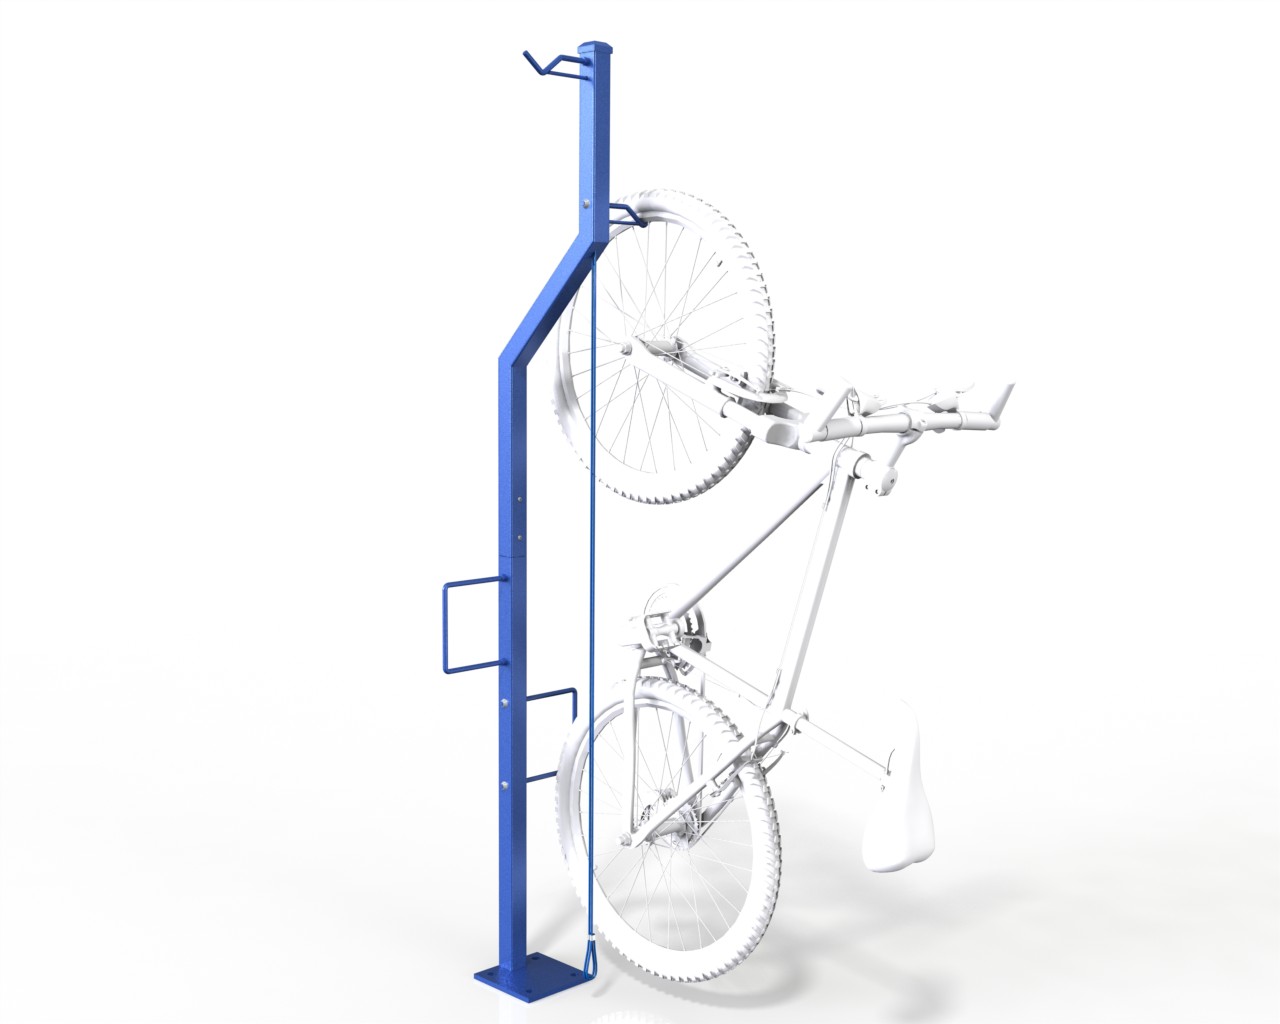 compact vertical bike rack